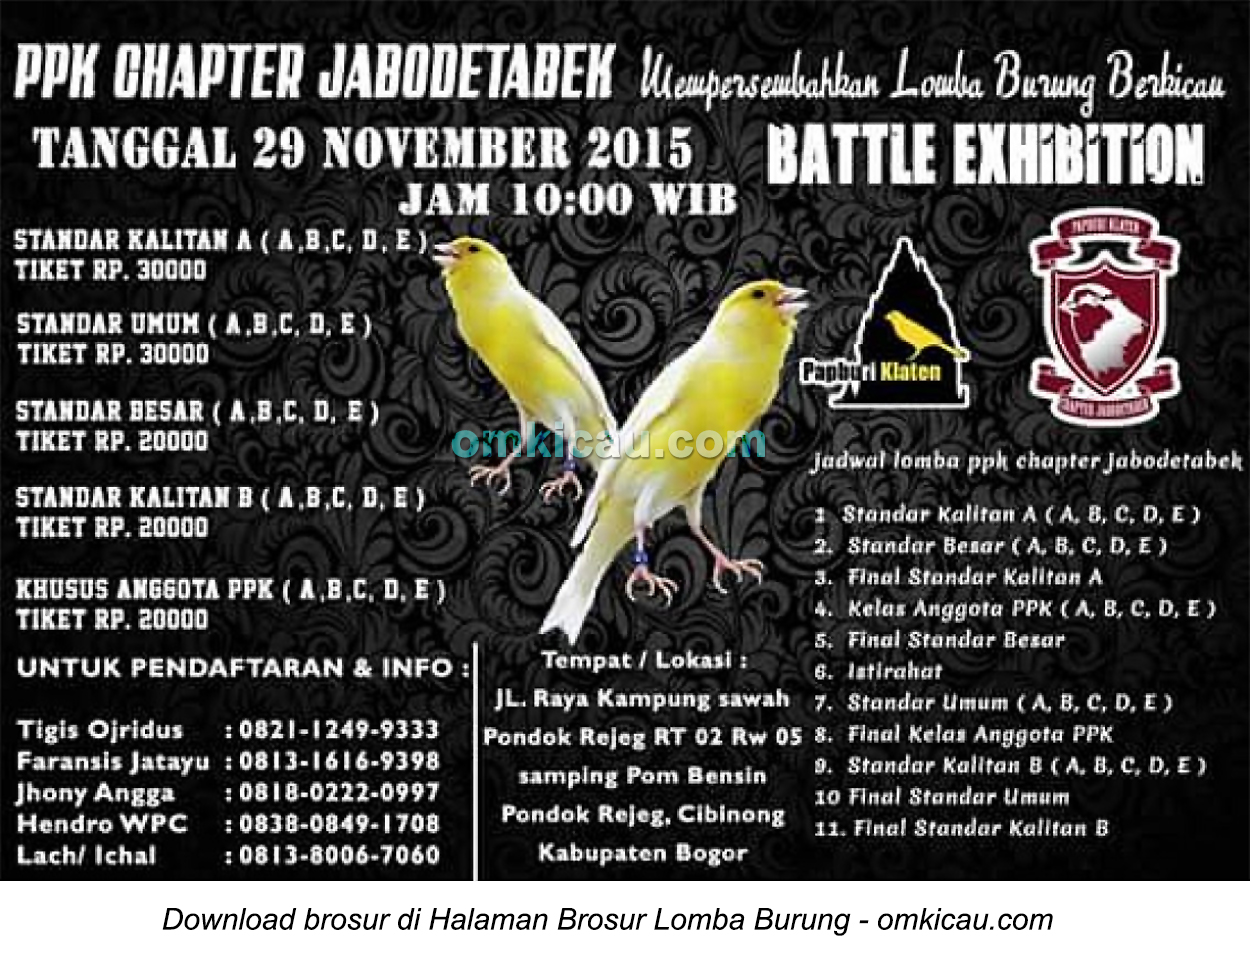 Brosur Lomba Burung Berkicau PPK Chapter Jabodetabek, Bogor, 29 November 2015